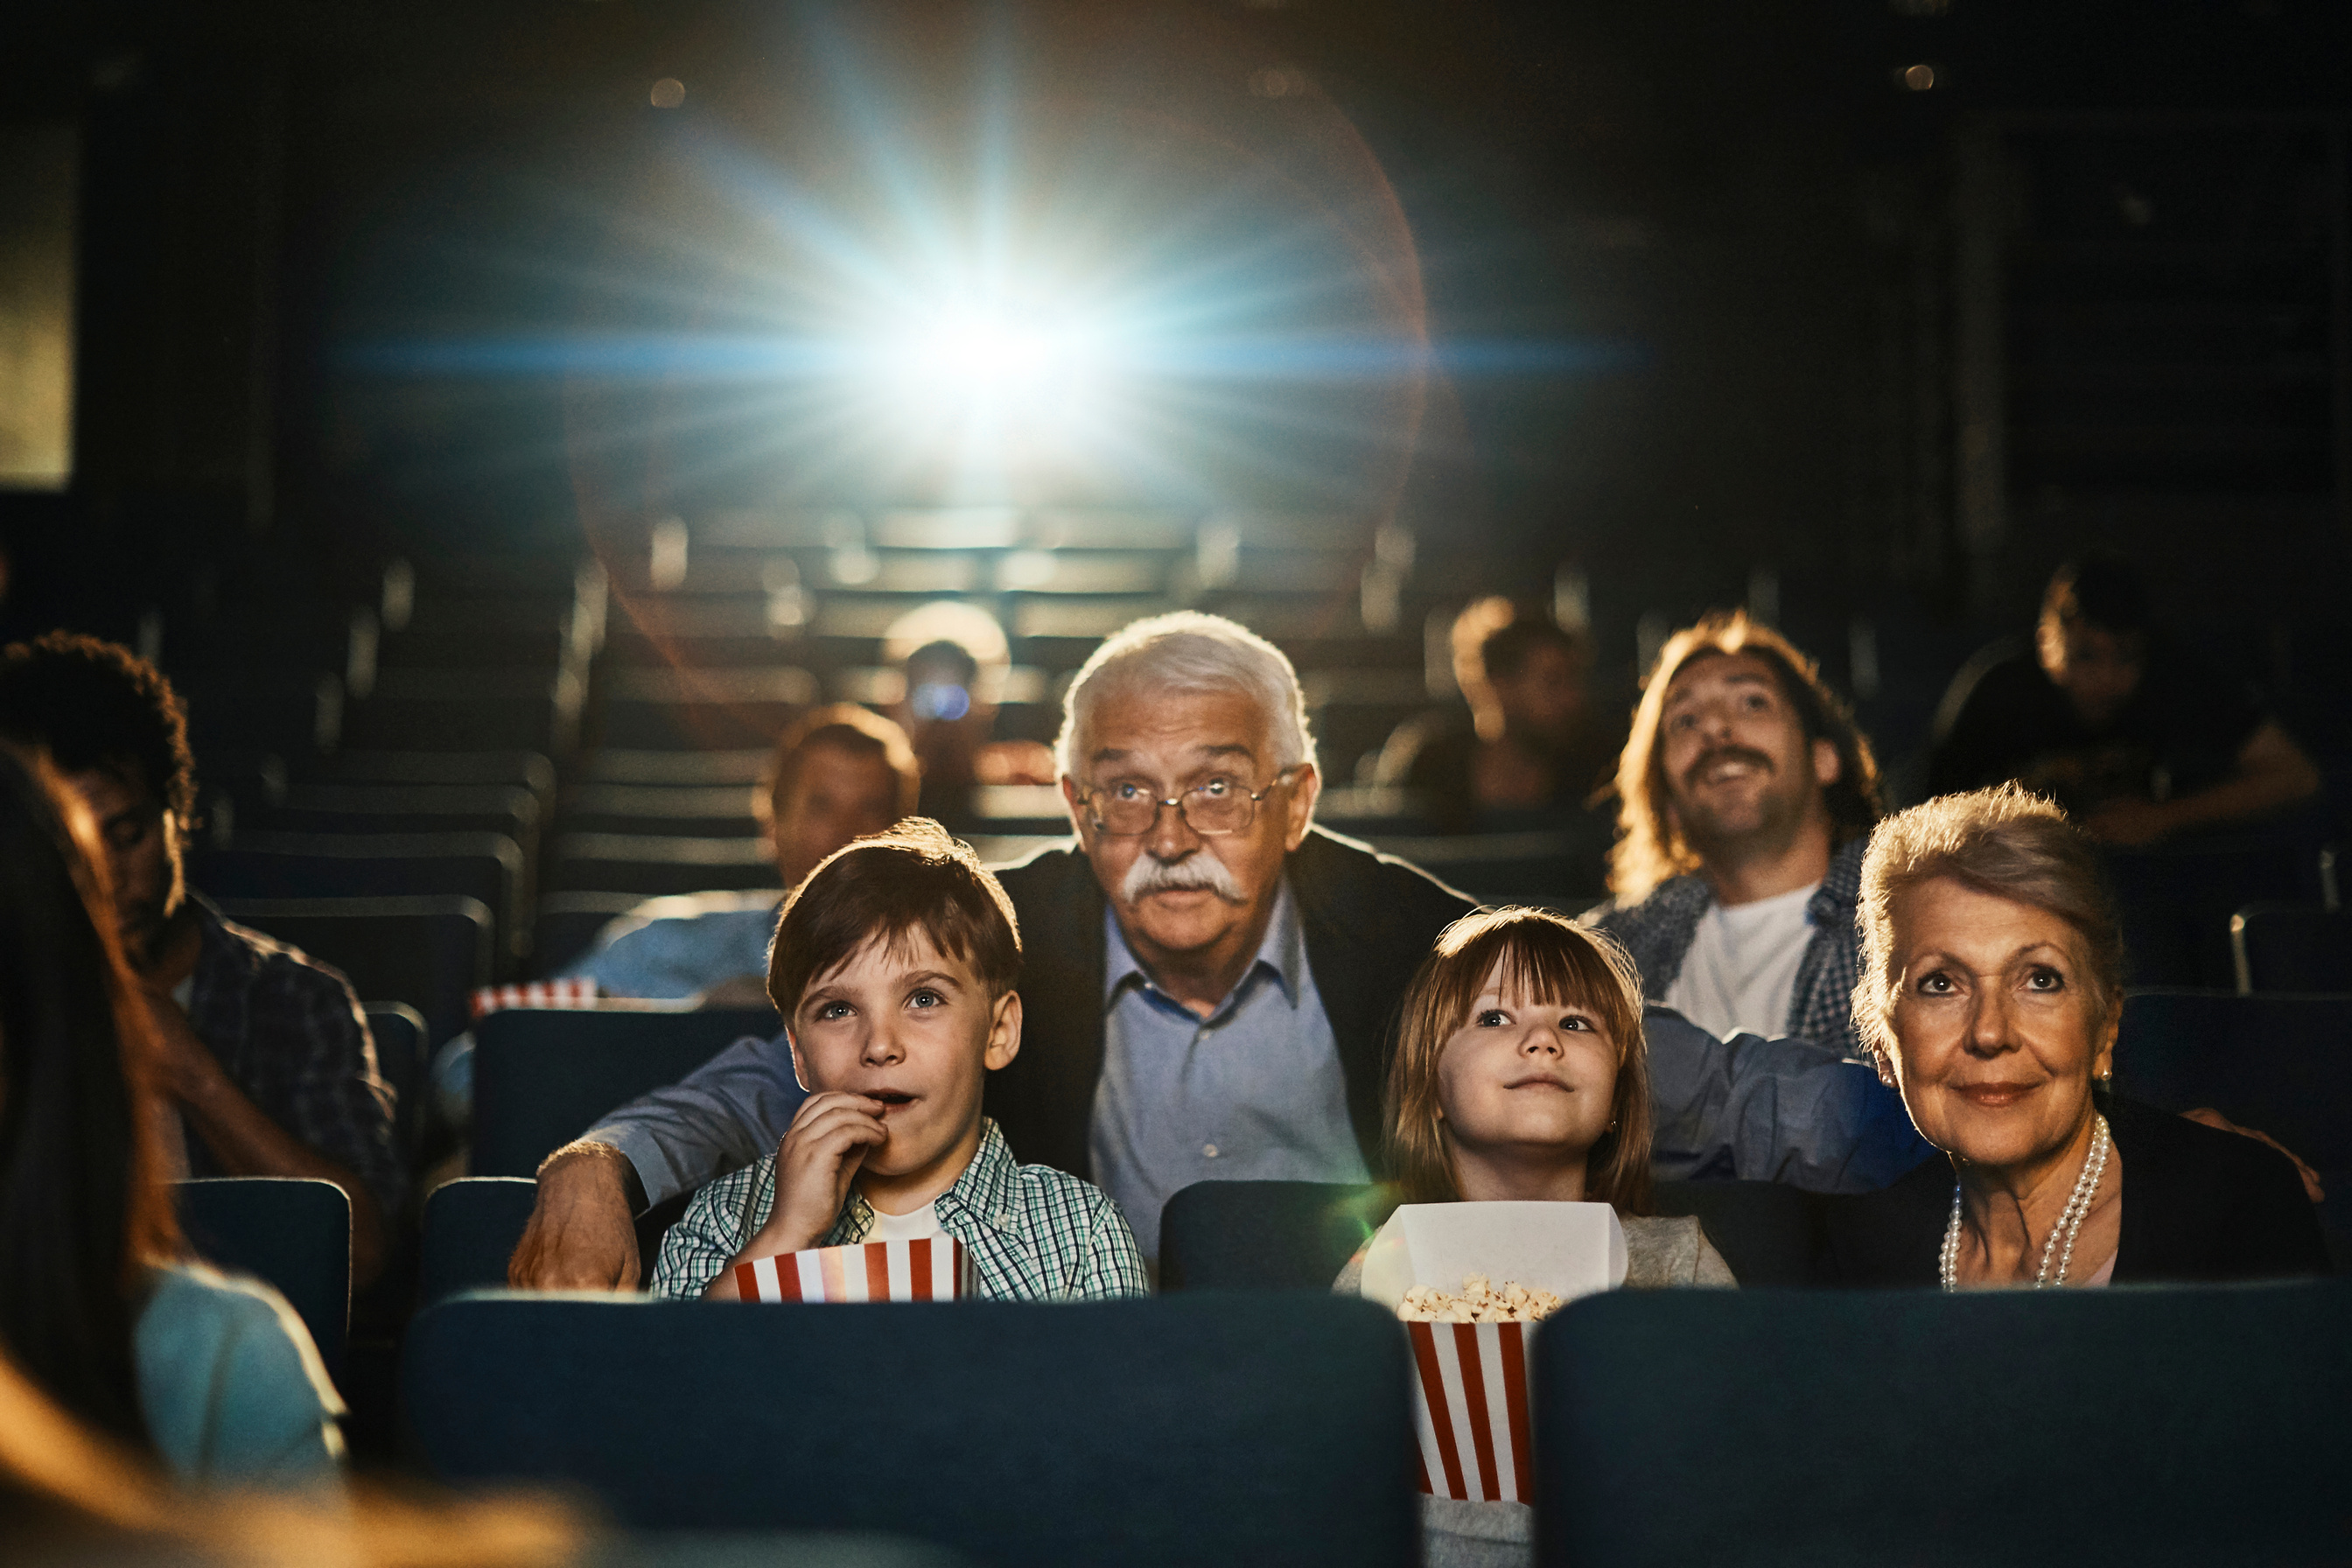 Family in the cinema